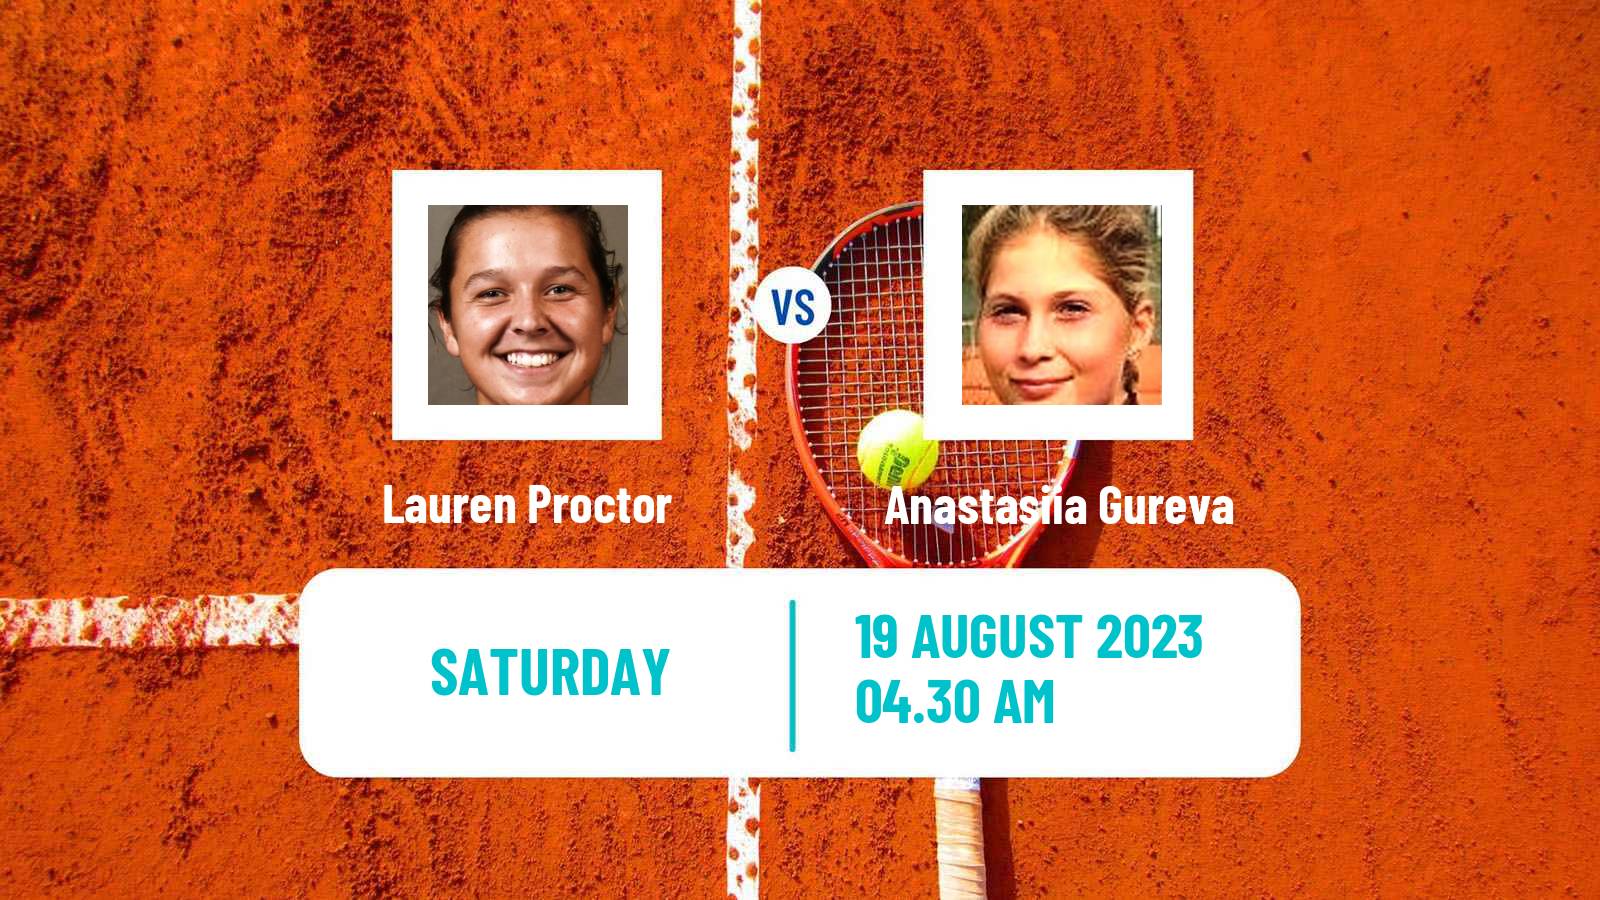 Tennis ITF W15 Monastir 28 Women Lauren Proctor - Anastasiia Gureva